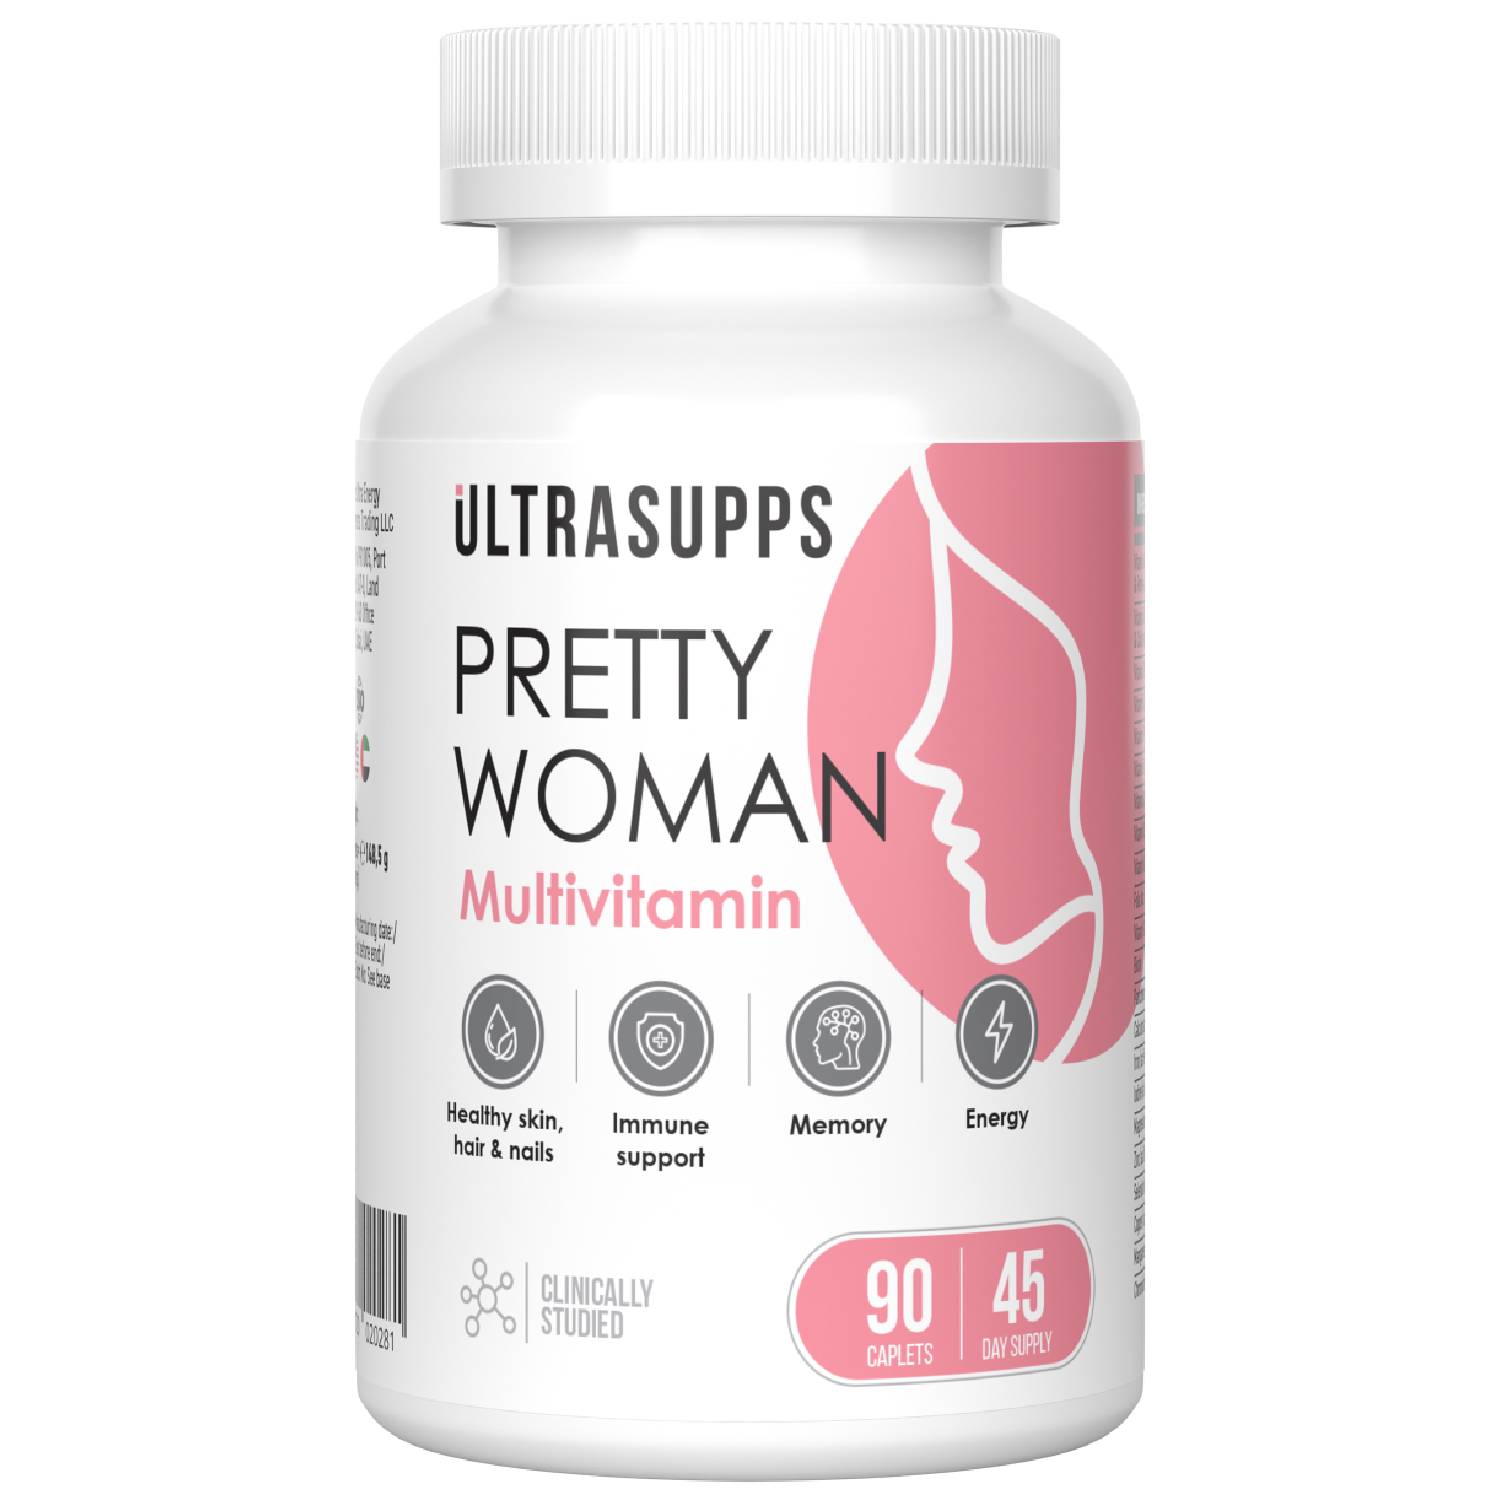 Ultrasupps Витаминно-минеральный комплекс для женщин Pretty Woman Multivitamin, 90 каплет (Ultrasupps, ) vplab витаминно минеральный комплекс для женщин каплеты 90 шт